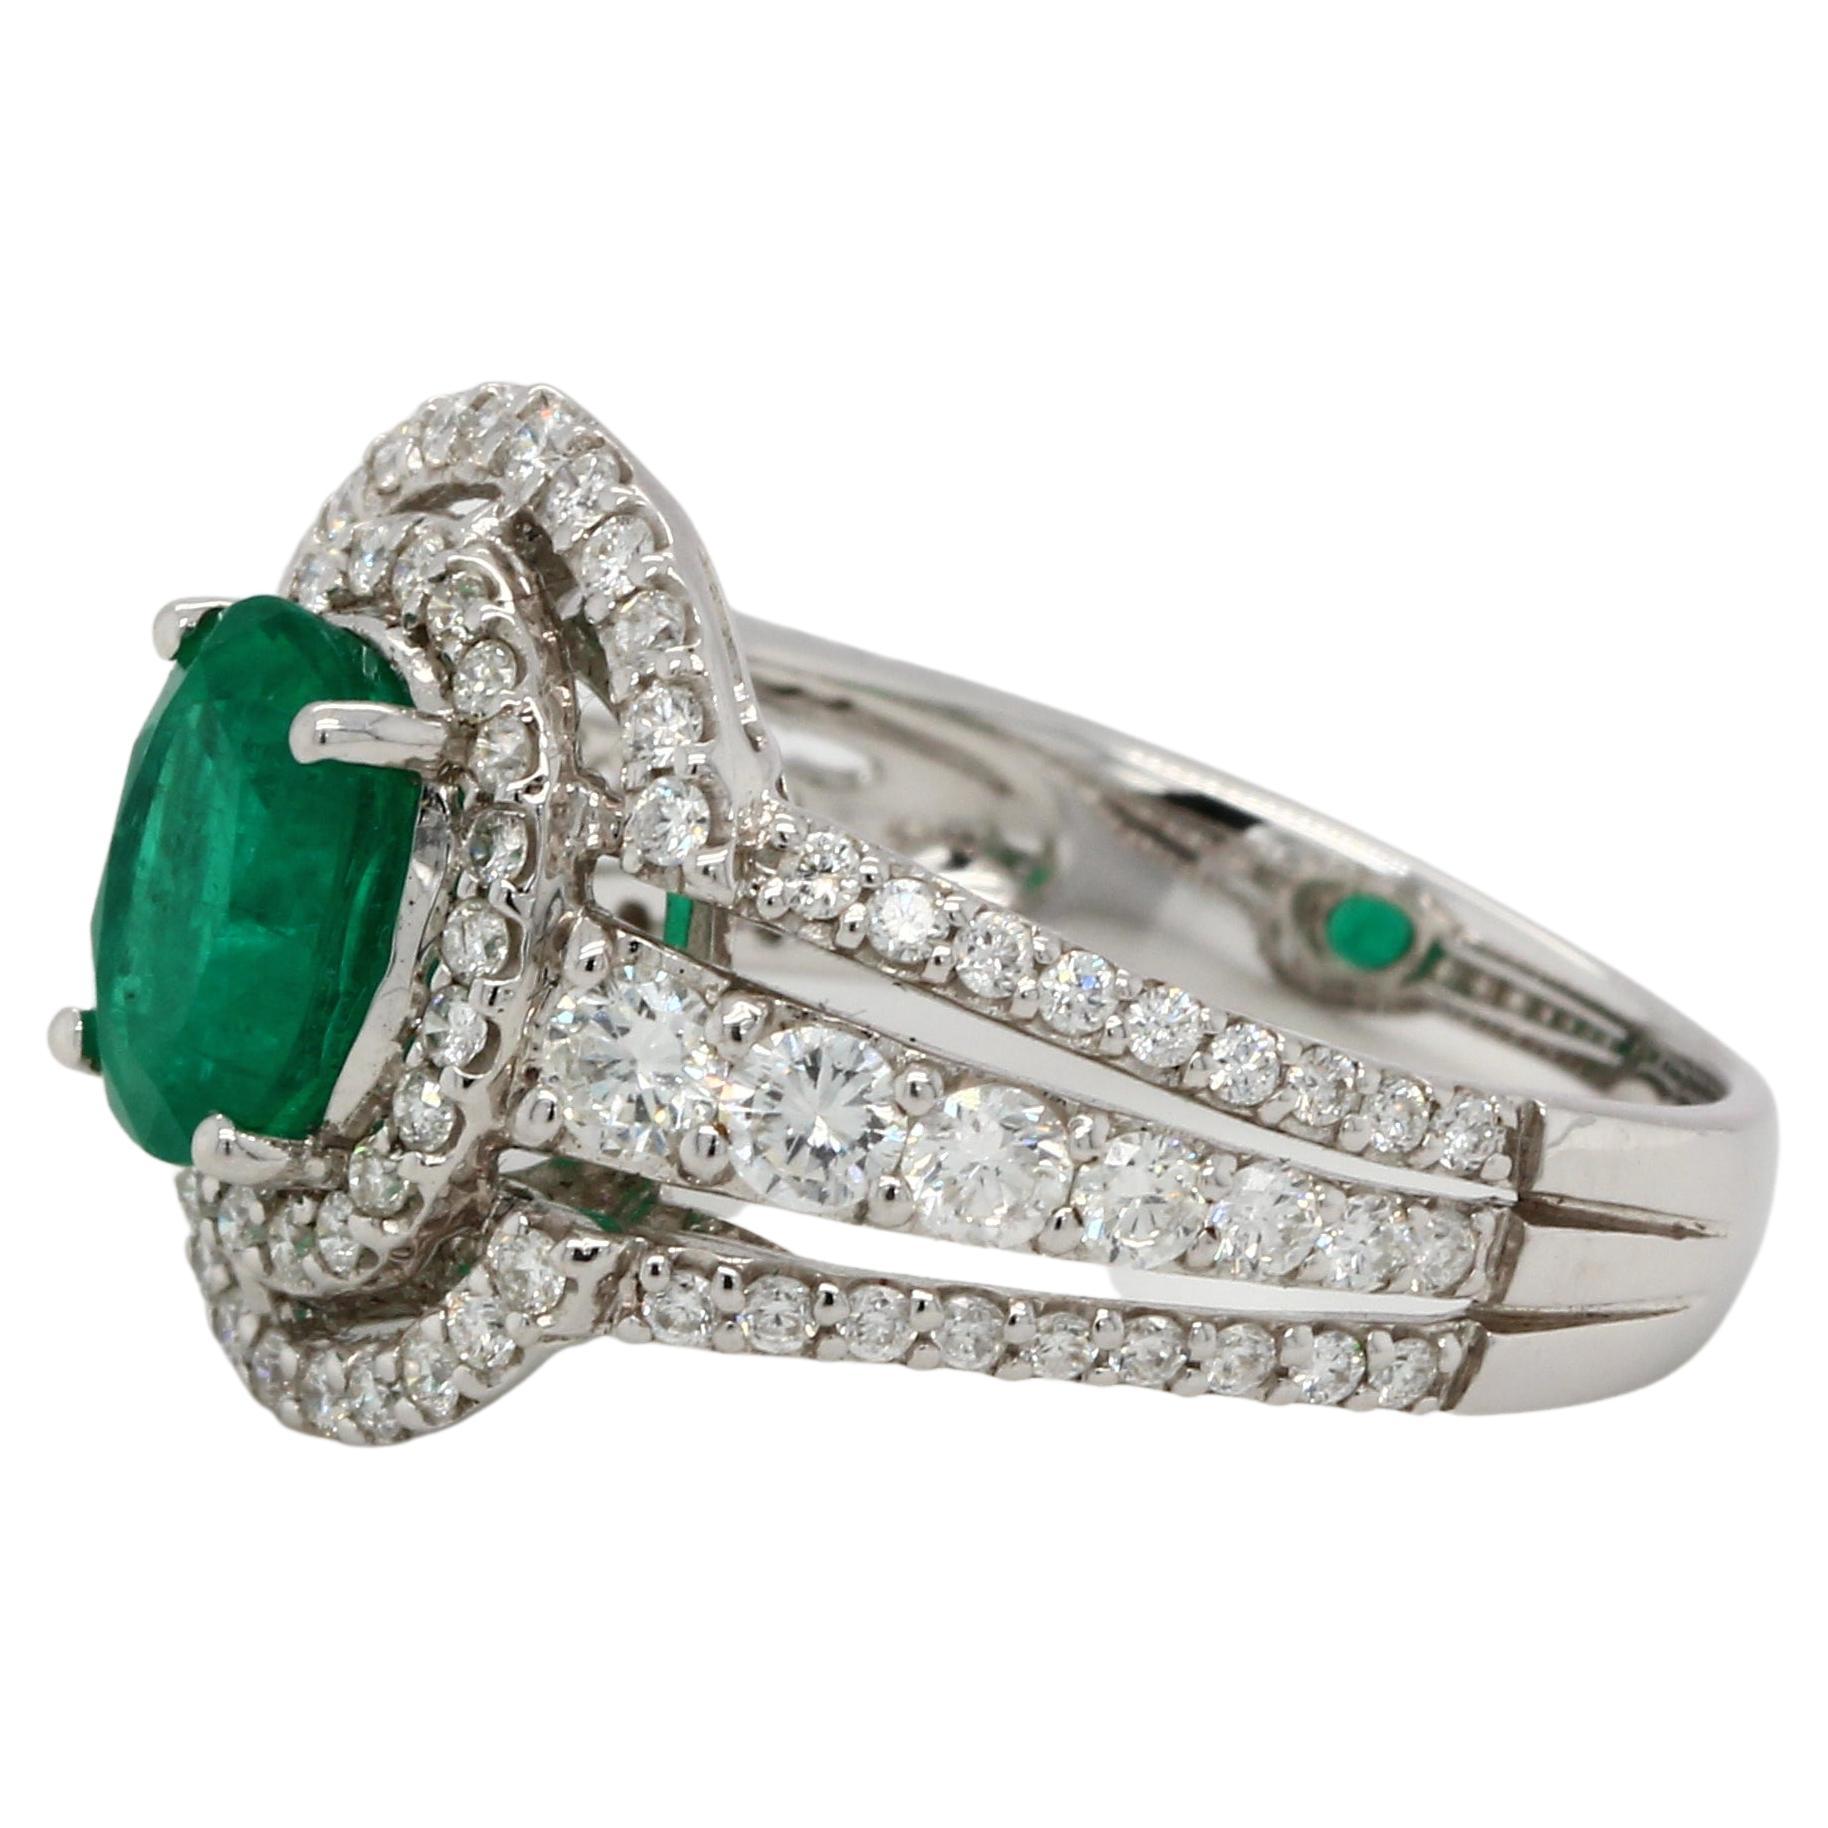 Ein brandneuer 18K Goldring mit Smaragd und Diamant. Dieser Ring besteht aus einem ovalen Smaragd von 1,36 Karat und einem runden Diamanten von 1,00 Karat. Dieser Ring ist aus 18 Karat Weißgold gefertigt und wiegt 4,66 Gramm.

Allure Jewellery Mfg.